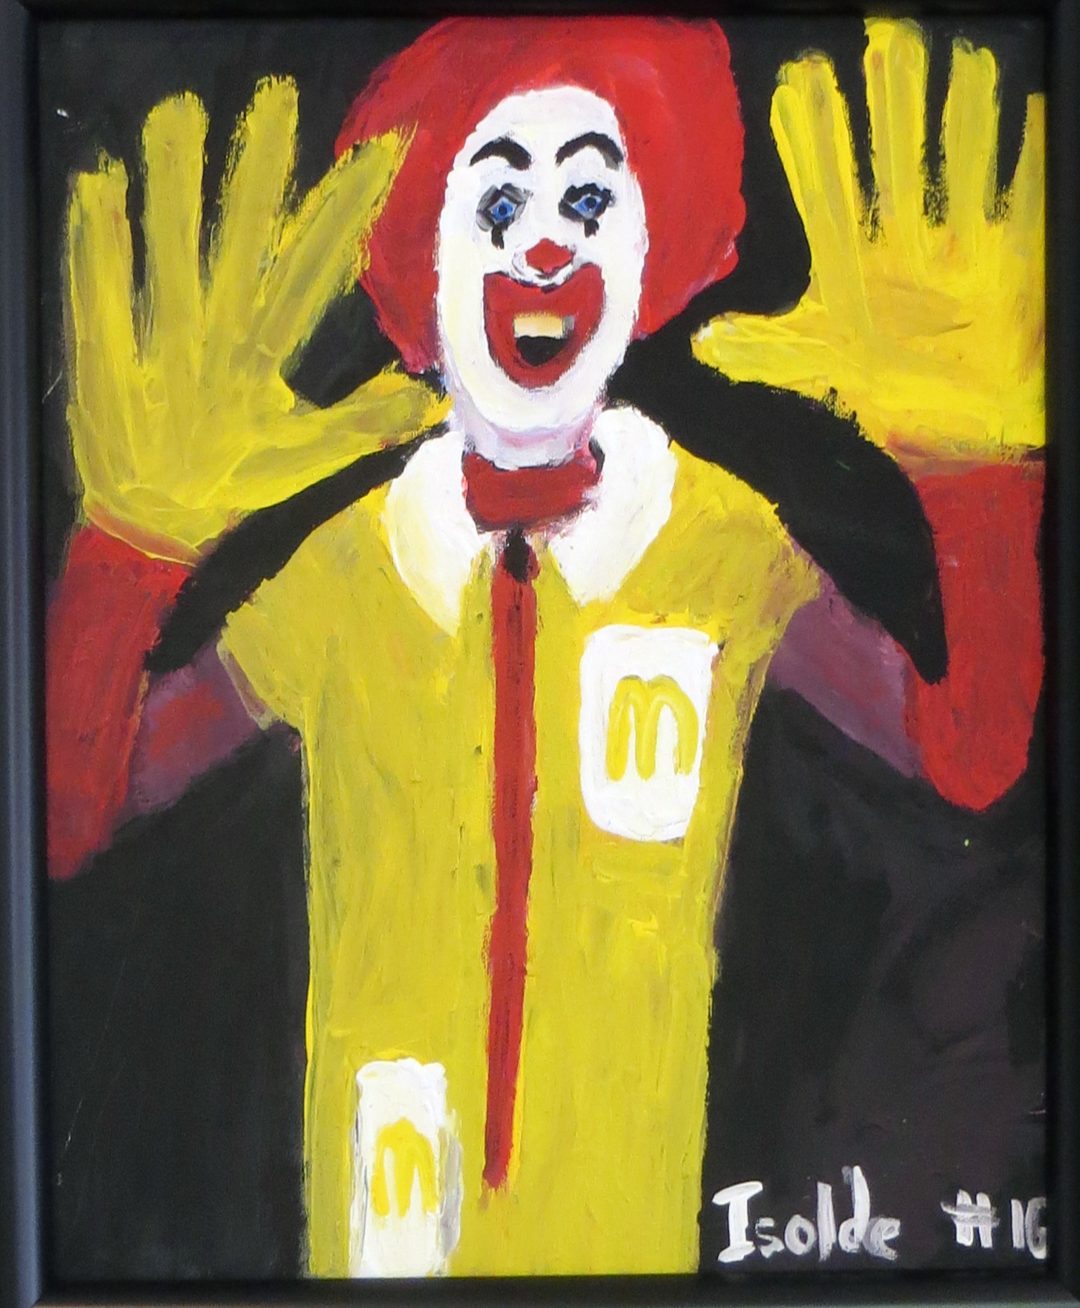 Richard Isolde “Ronald McDonald” acrylic, $200.00